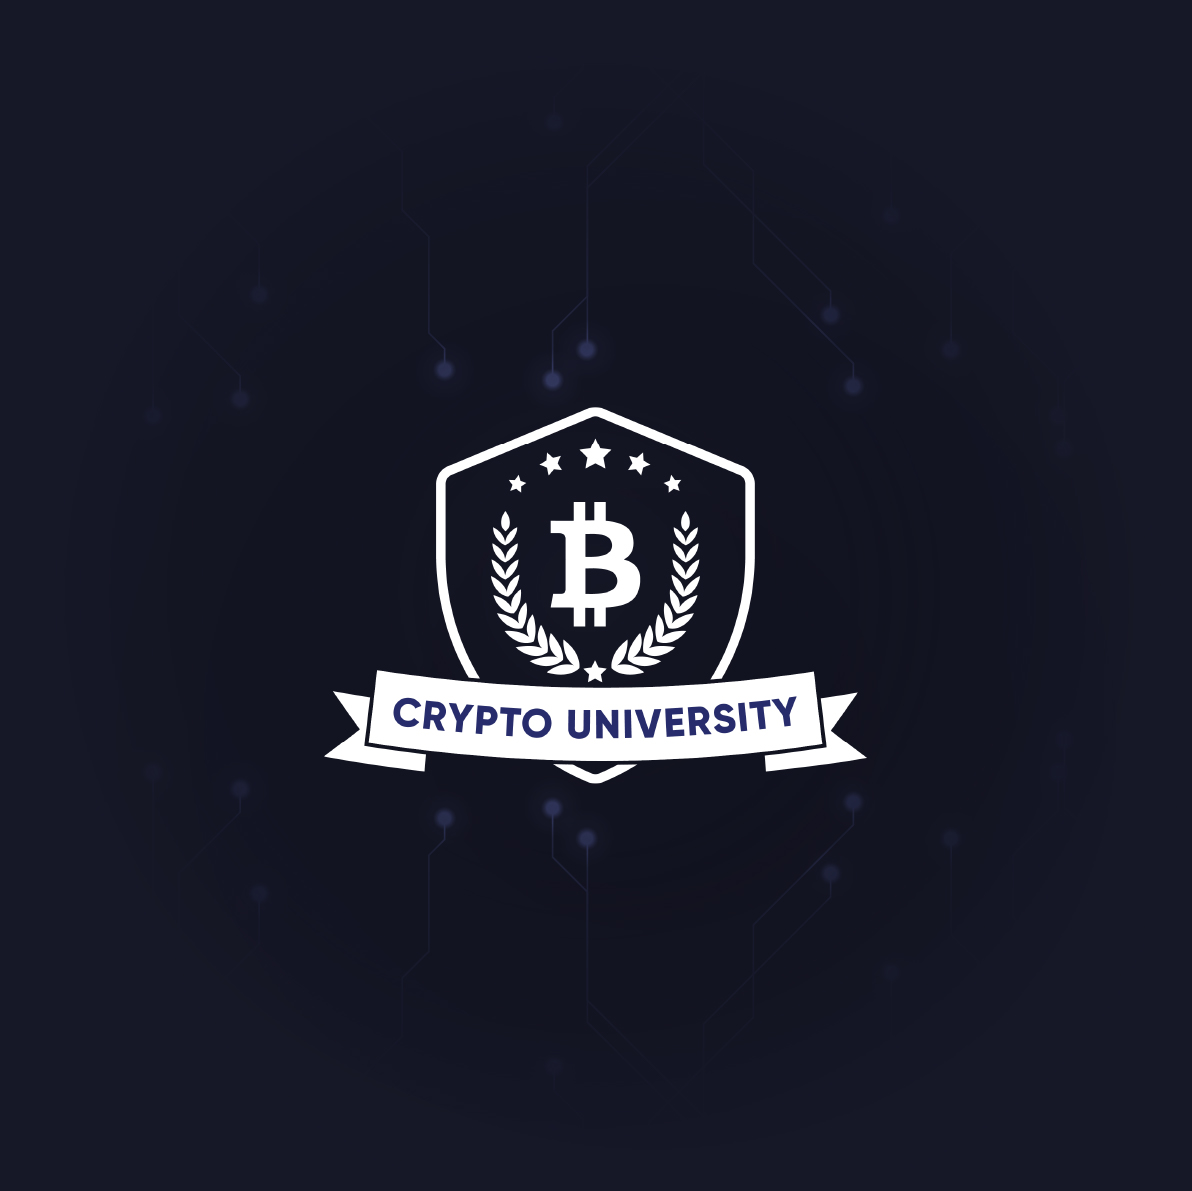 crypto.com/university